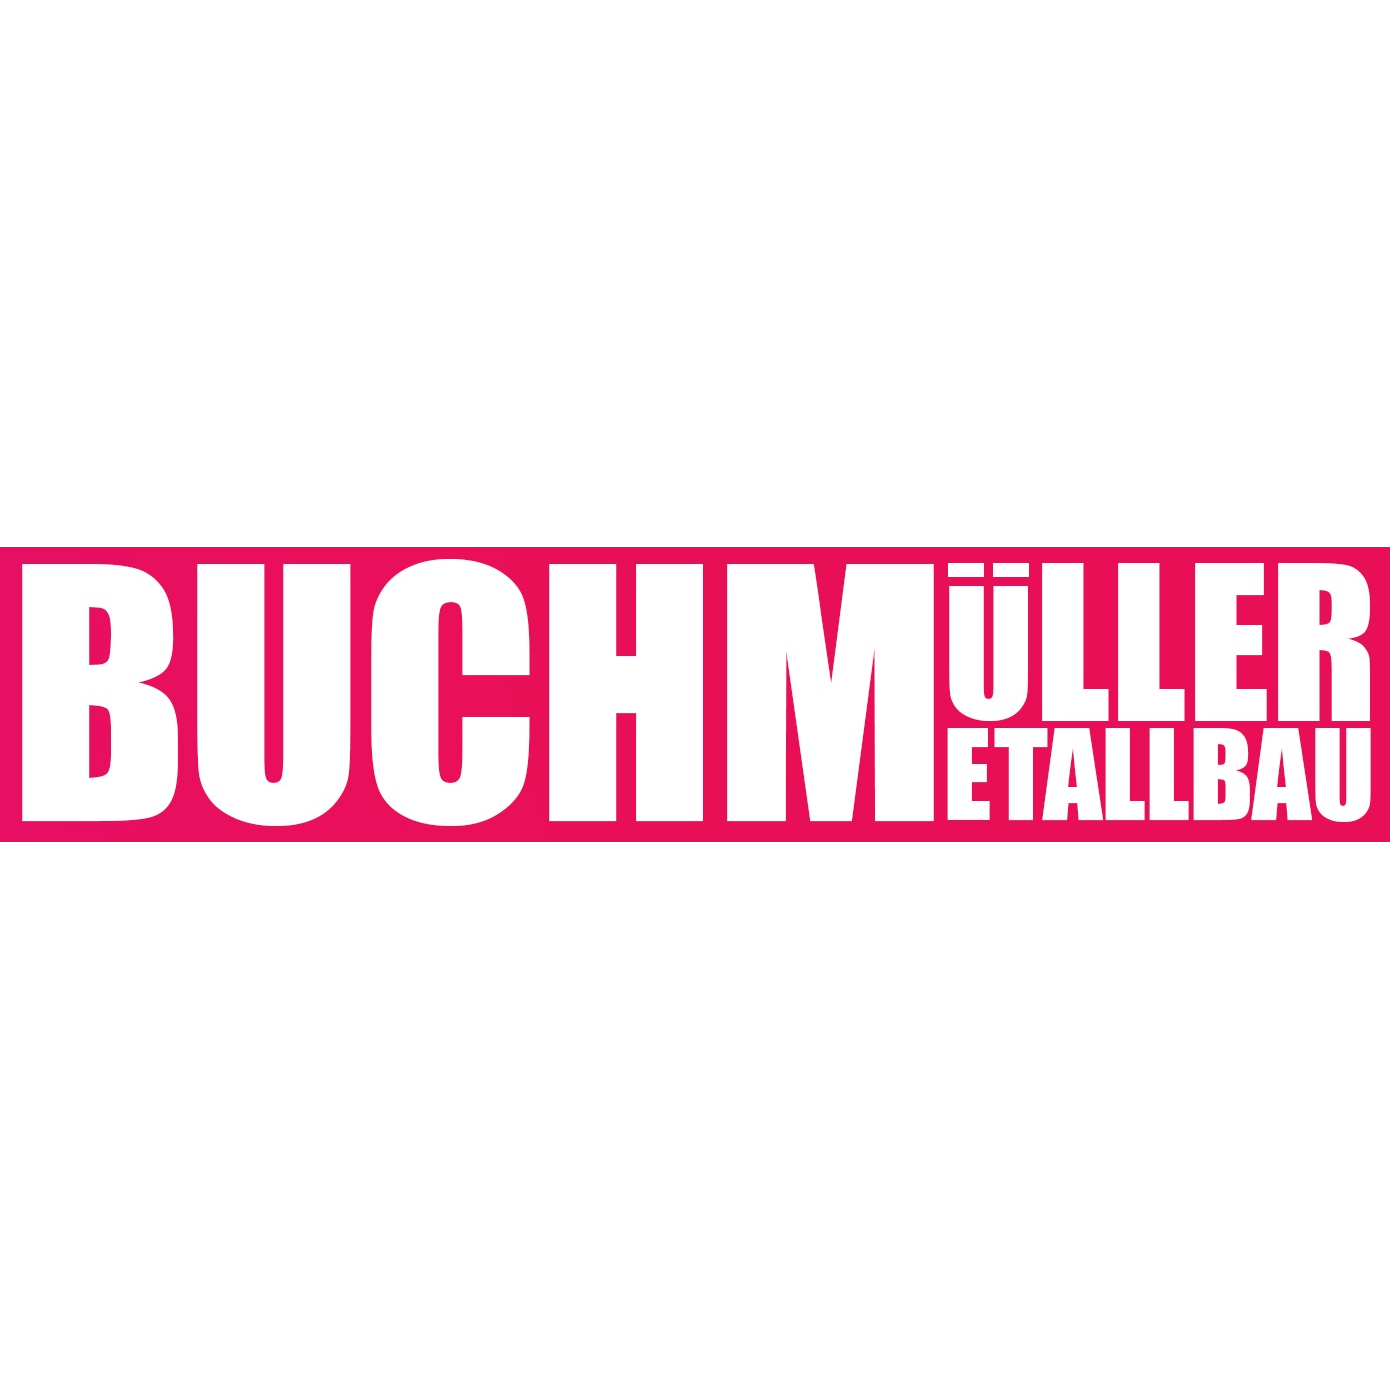 Buchmüller Metallbau in Windeck an der Sieg - Logo